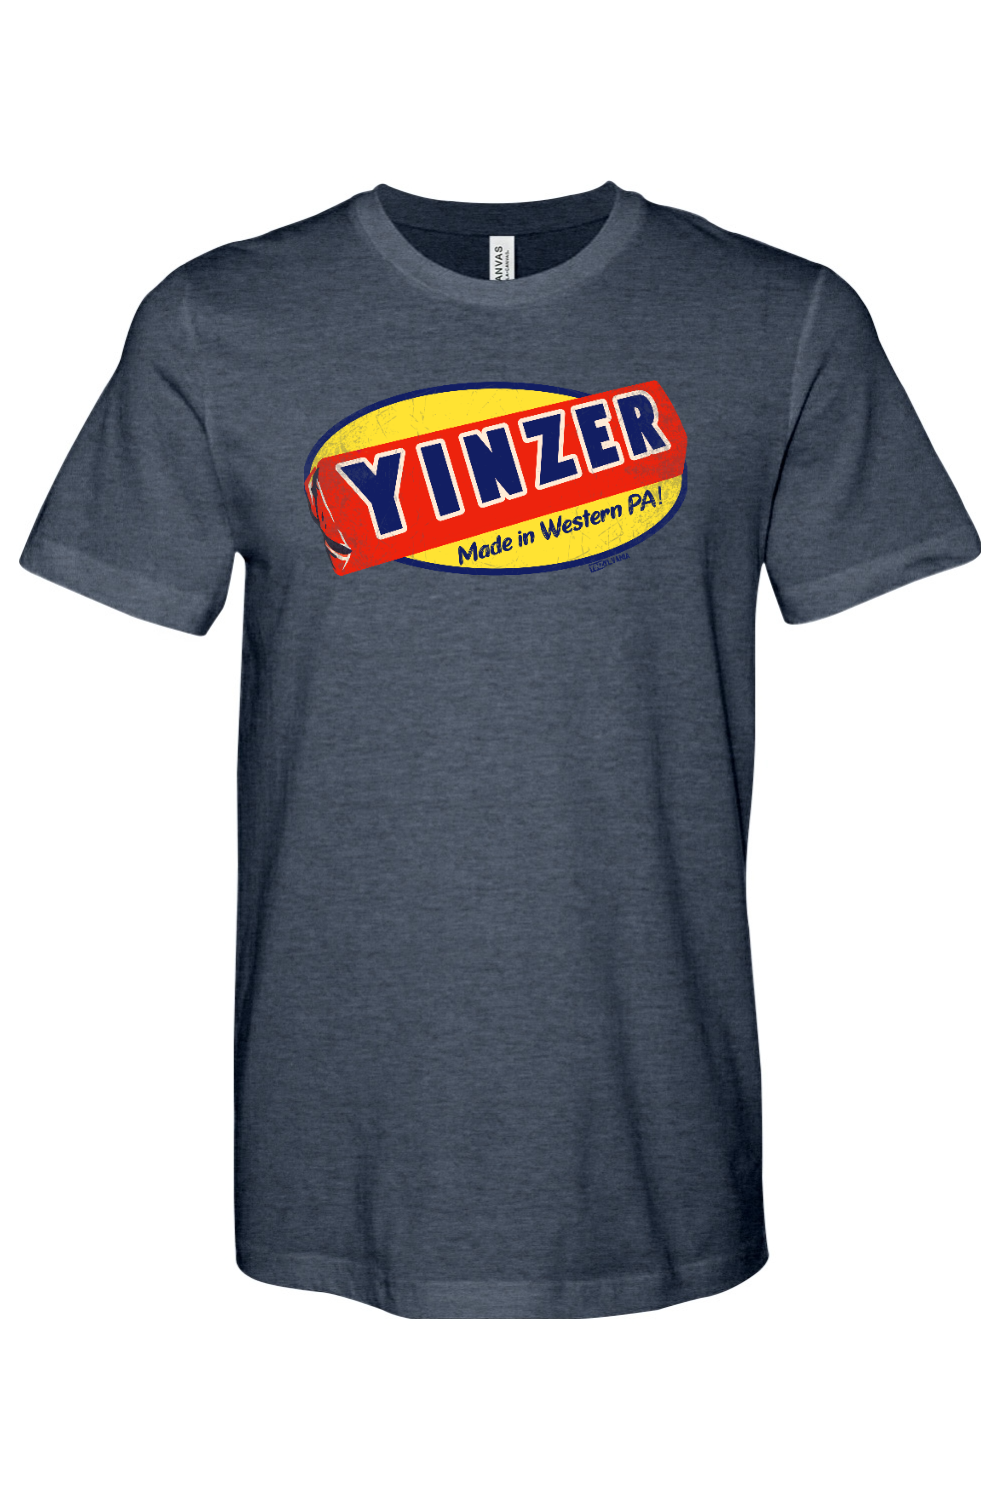 Yinzer Candy Bar - Yinzylvania